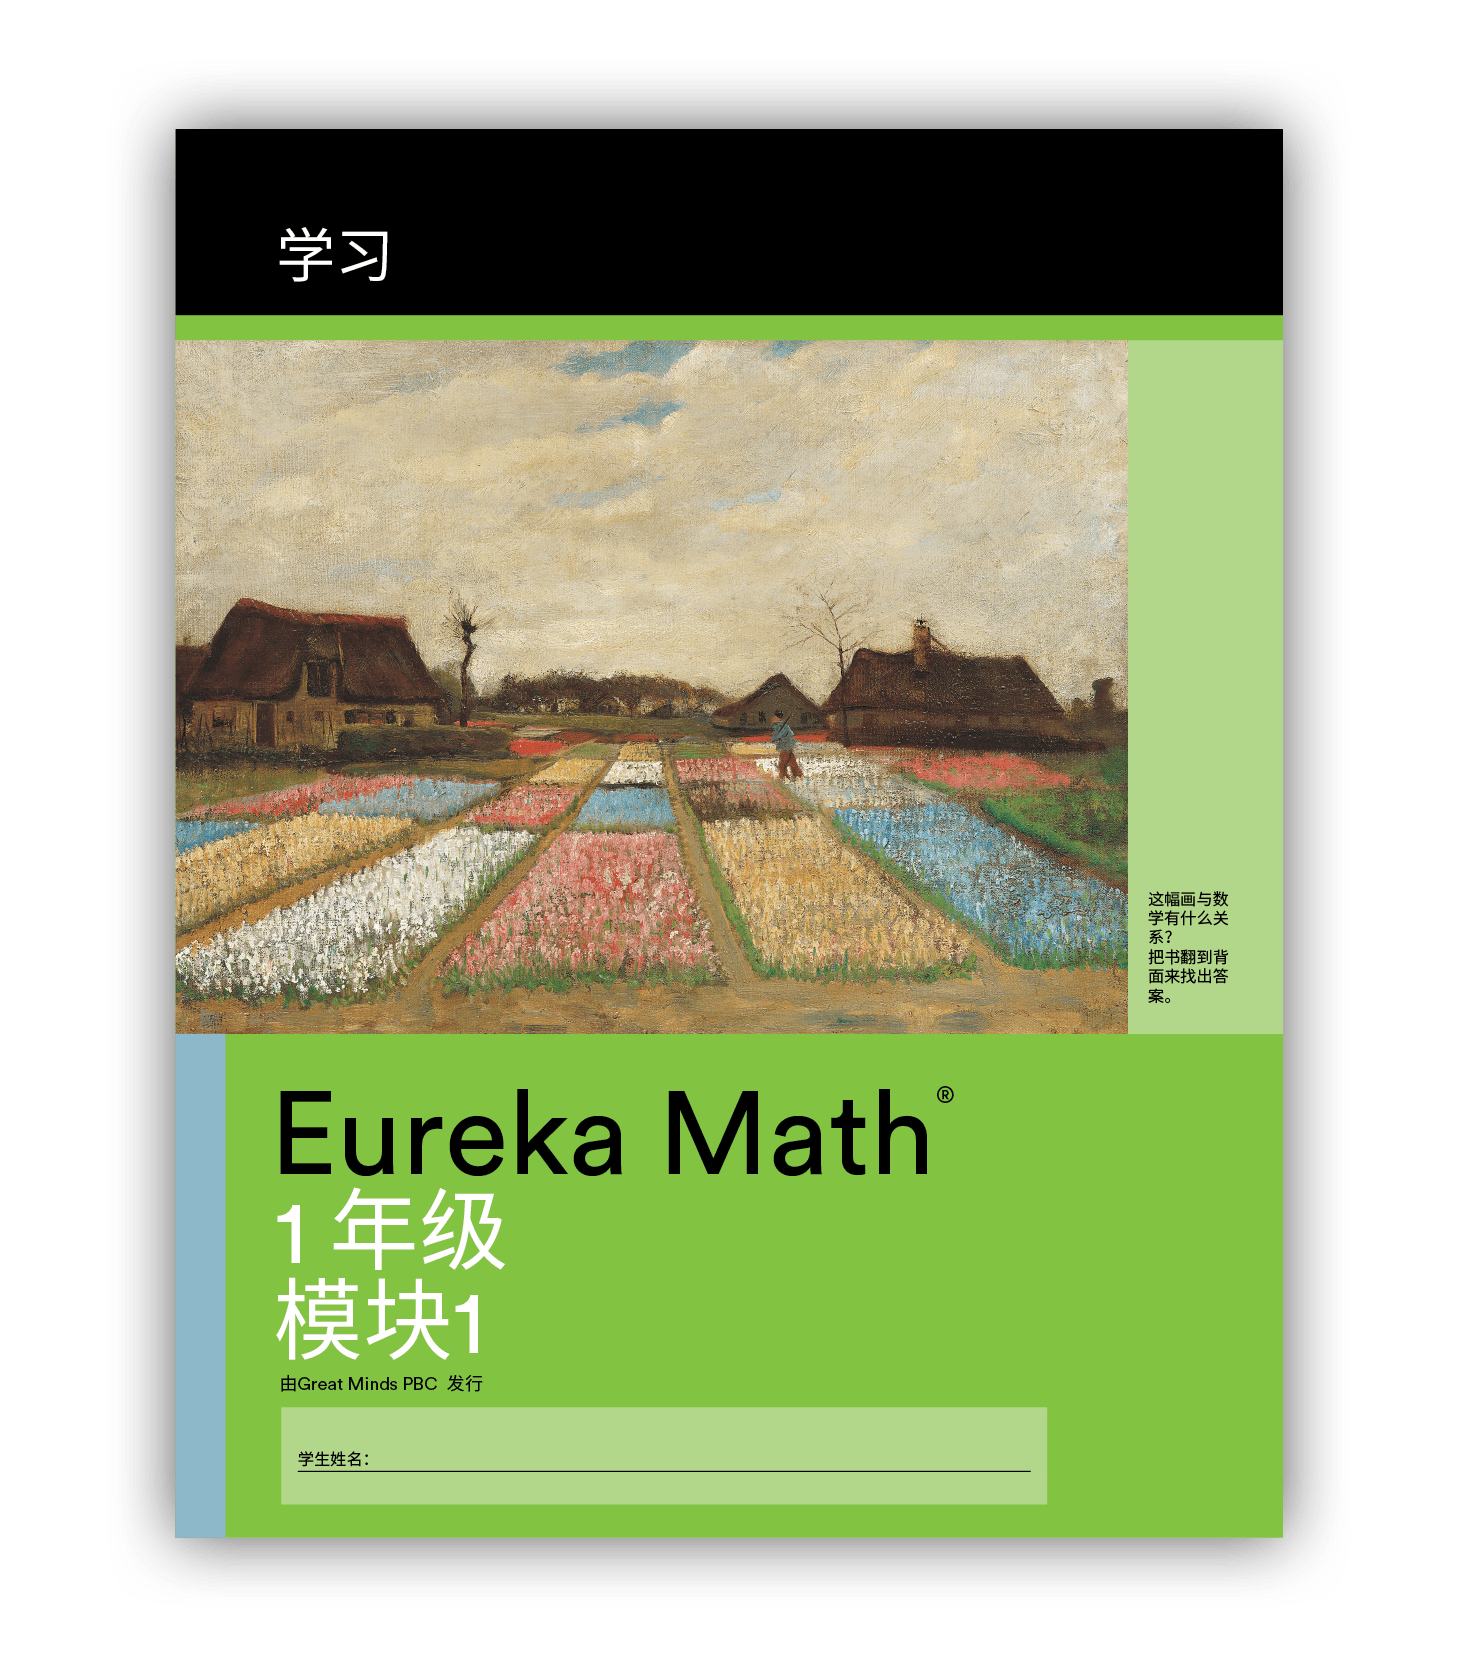 Eureka Math Learn Book in Mandarin for Grade 1